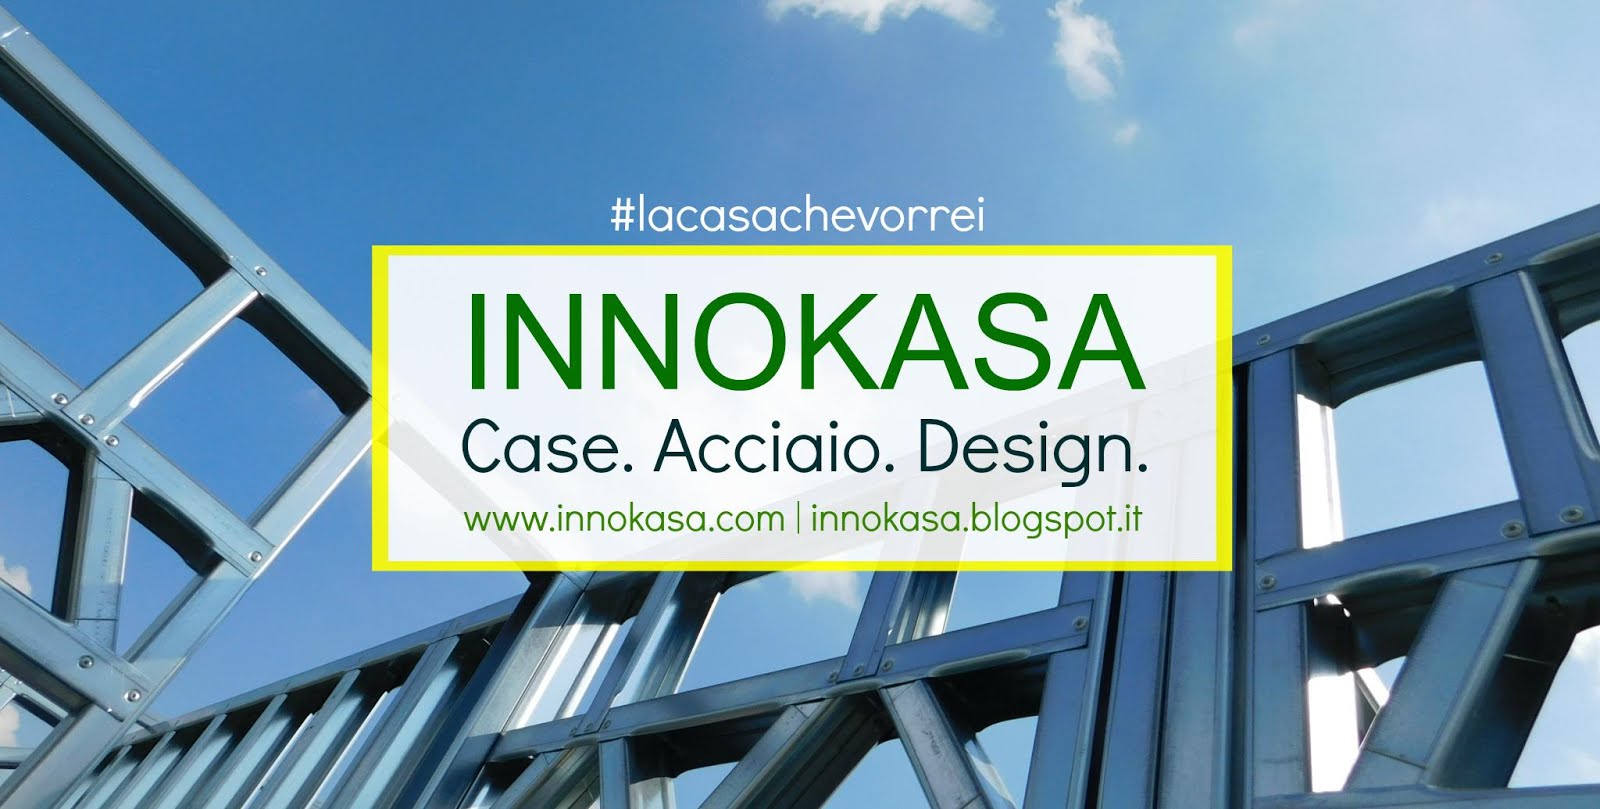 Innokasa - Case. Acciaio. Design.